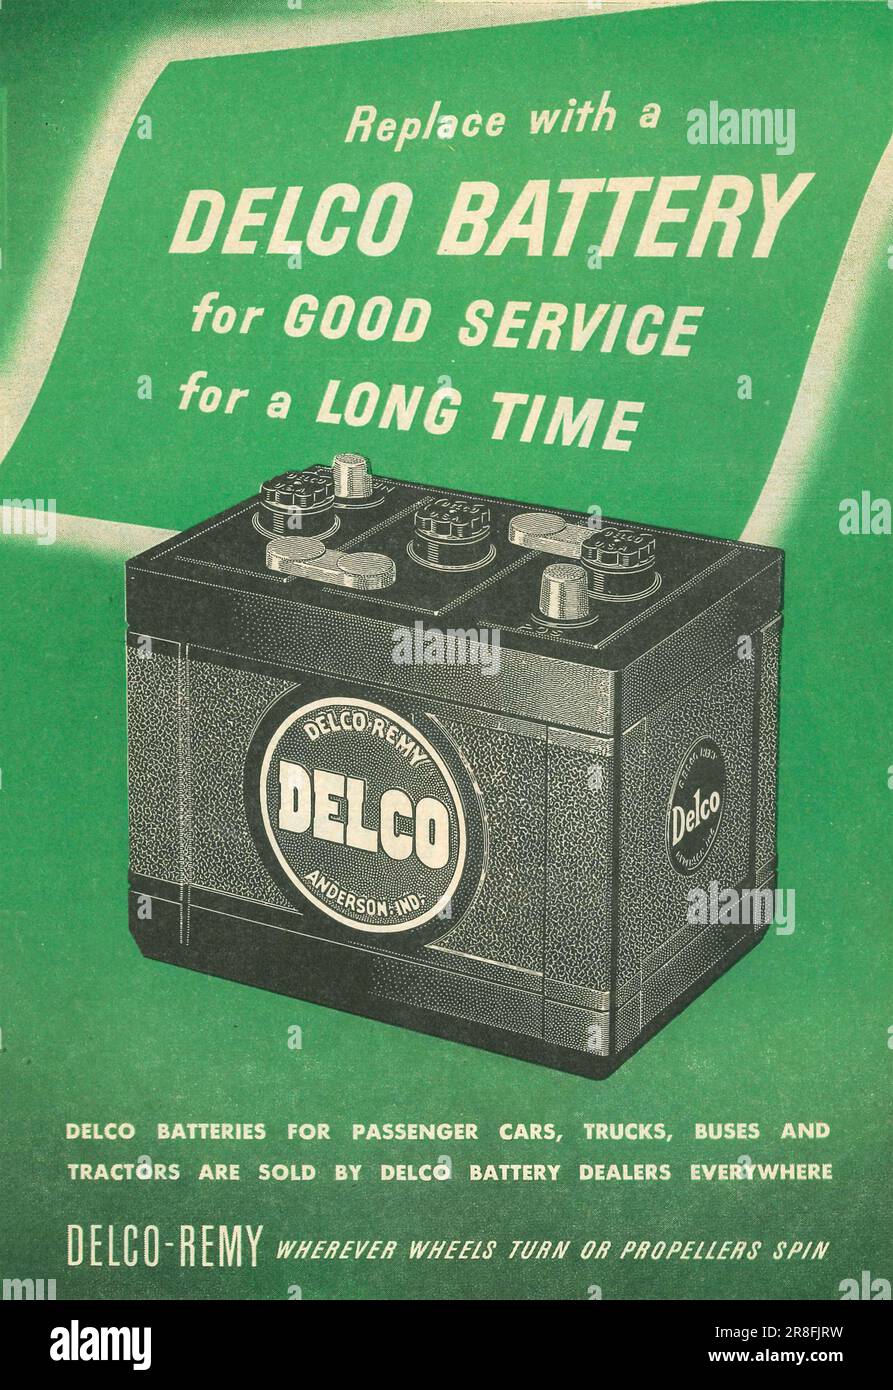 Batterie Delco pour voitures, camions et autobus, annonce Delco-Remy dans un magazine 1949 Banque D'Images